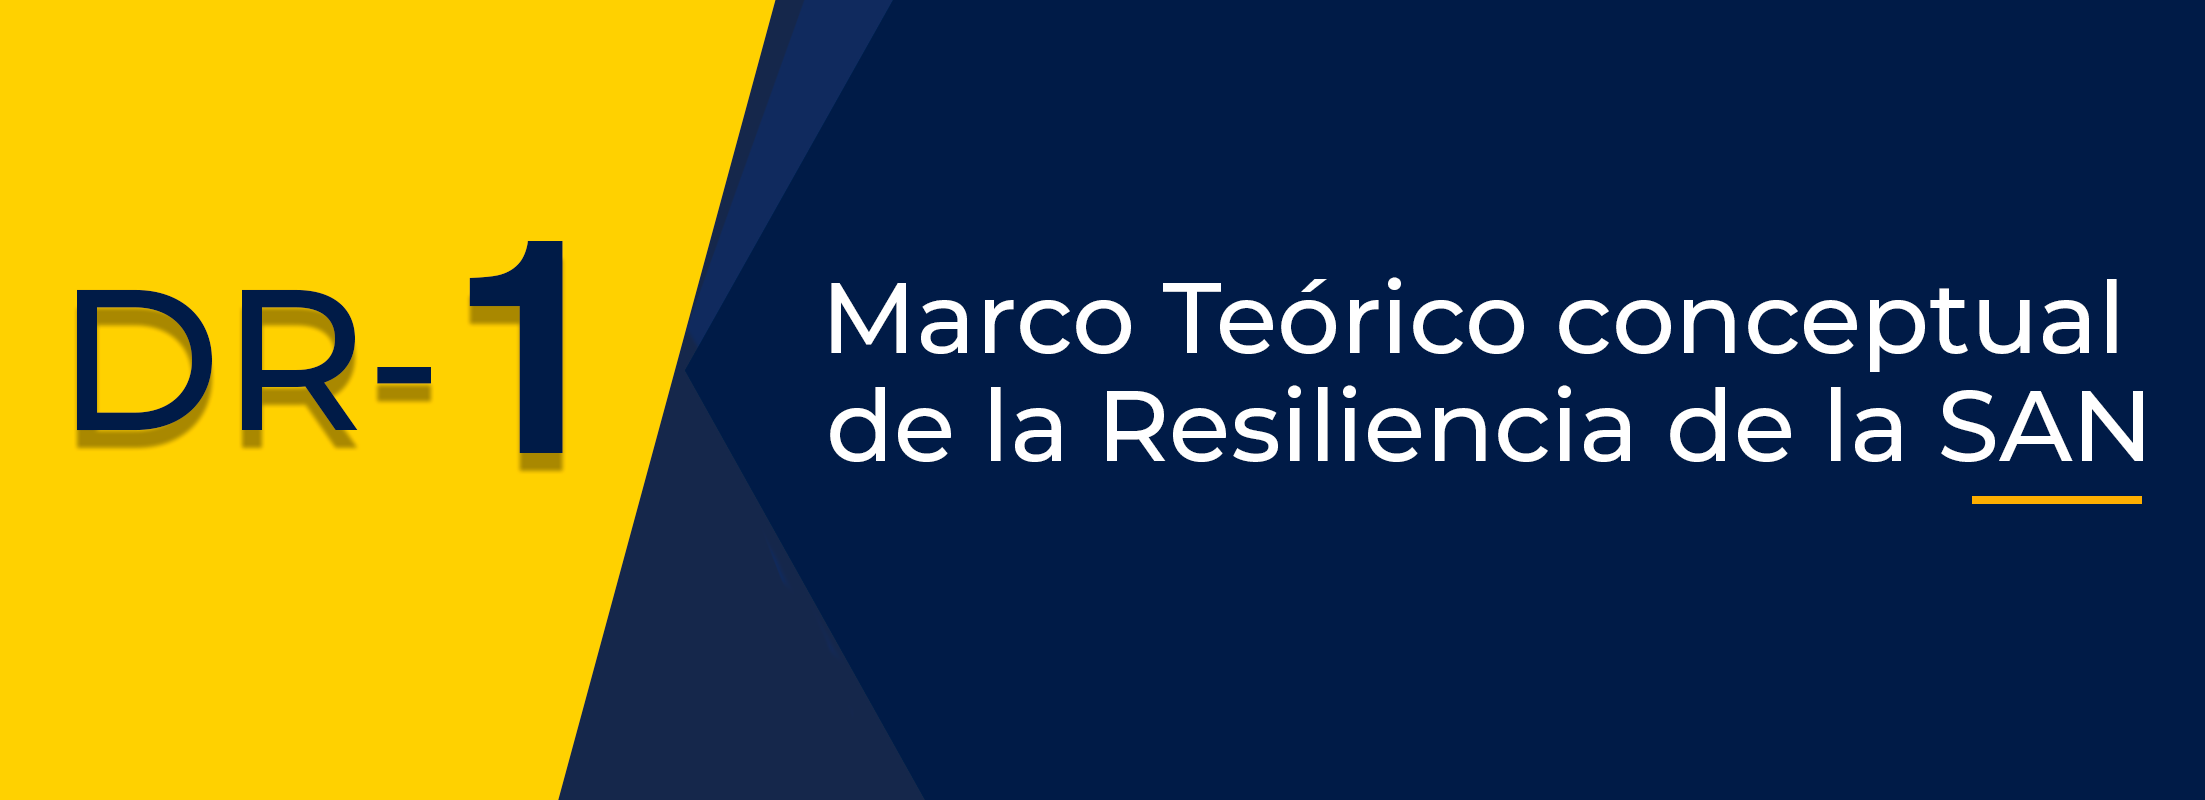 DR 1. Marco teórico conceptual de la resiliencia de la SAN (DIRESAN II-2021)